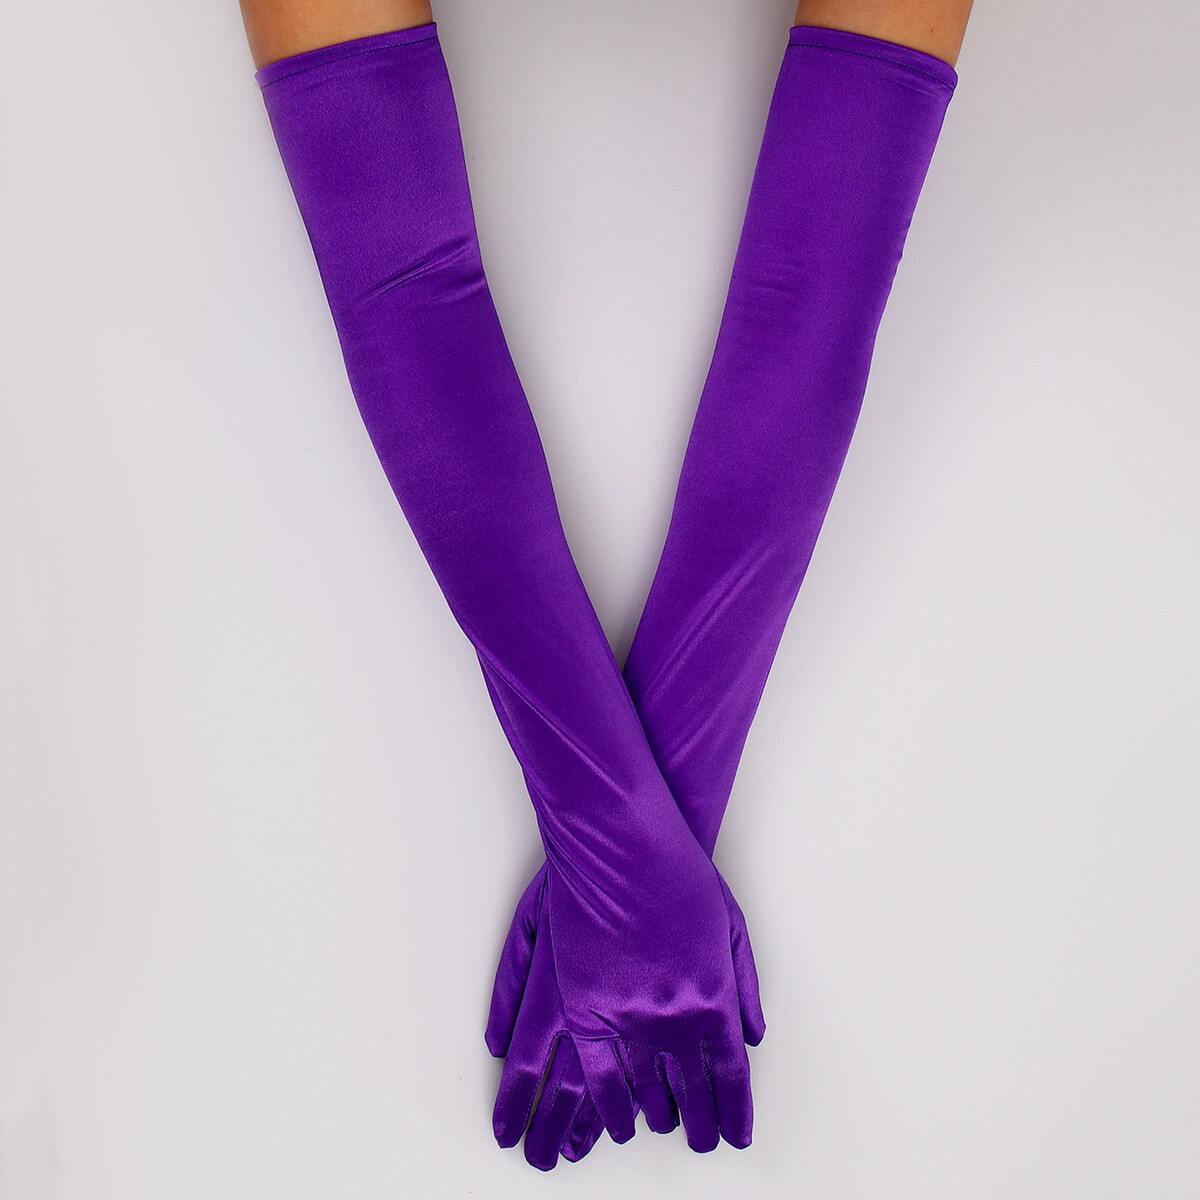 Карнавальный аксессуар - перчатки 55см, цвет фиолетовый карнавальный плащ взрослый атлас ярко фиолетовый длина 120 см